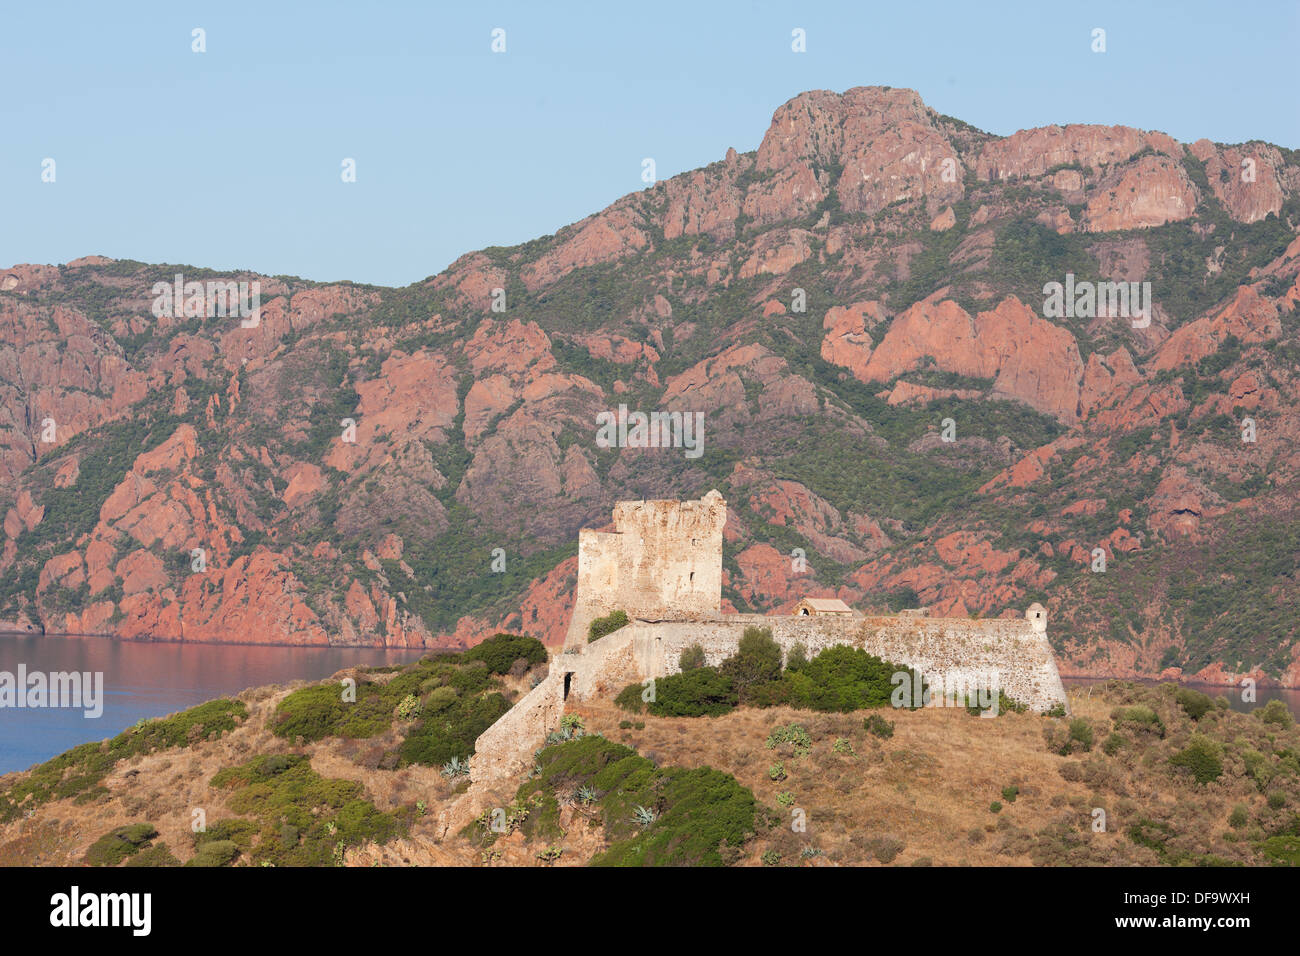 Genueser Turm mit Blick auf den Golf von Girolata, mit der massiven Klippe aus rotem Vulkangestein von Scandola im Hintergrund. Osani, Korsika, Frankreich. Stockfoto